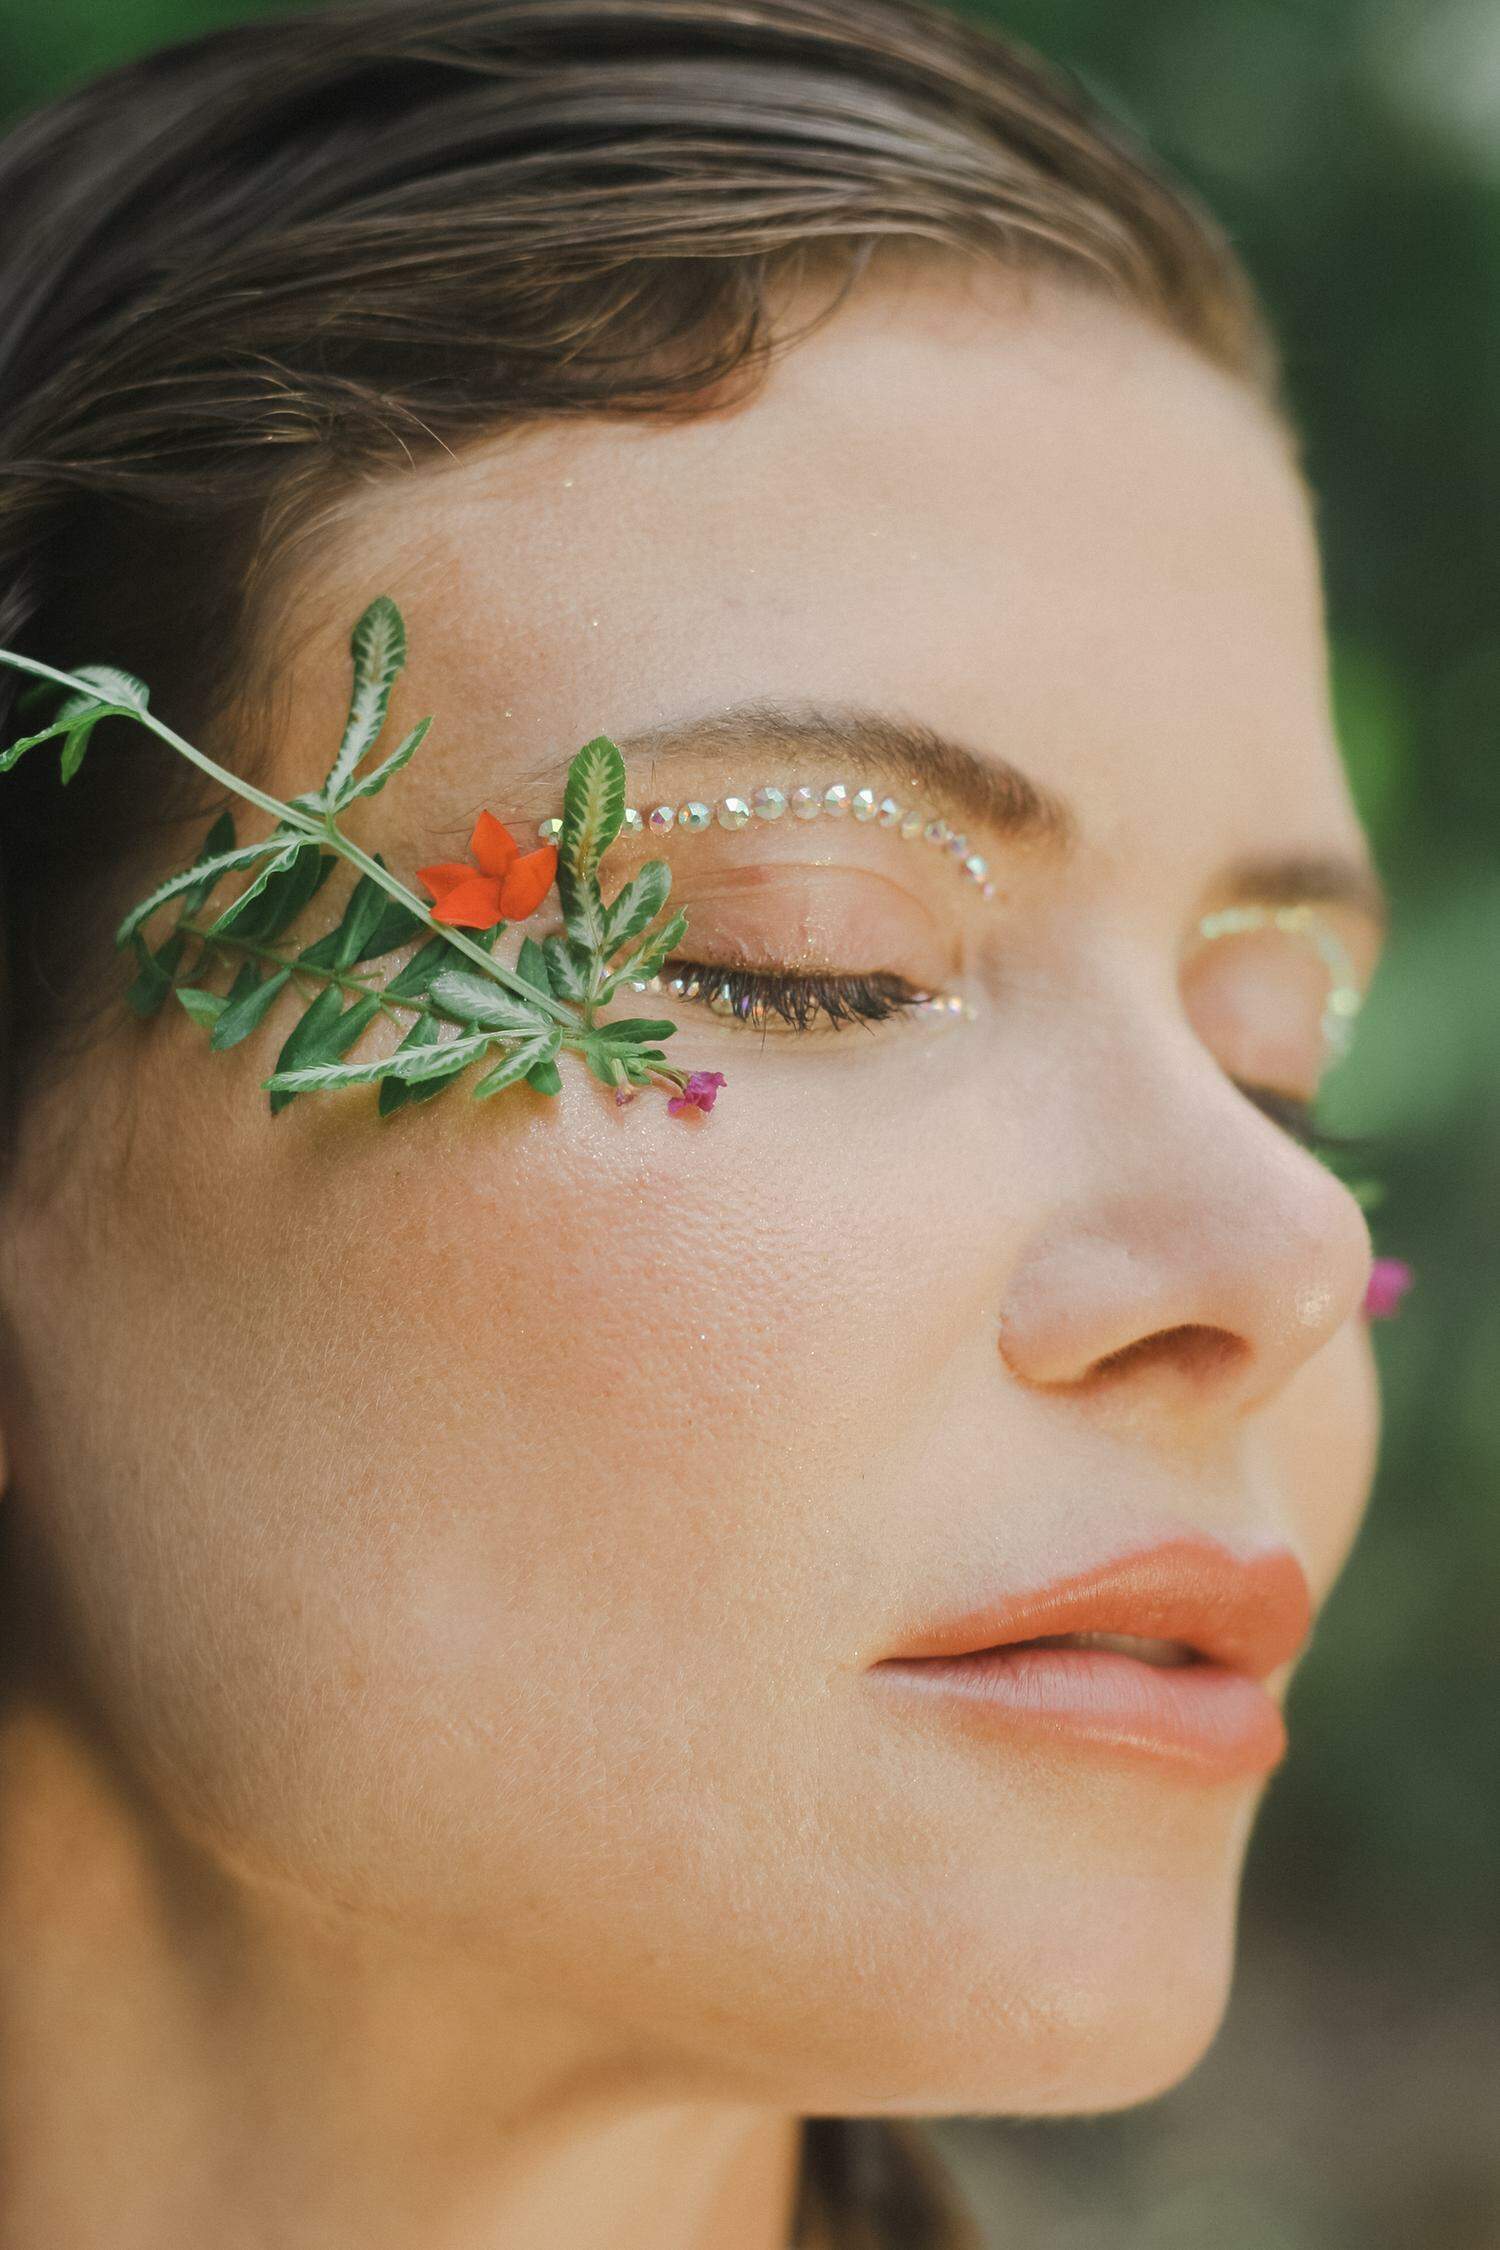 Maquiagem de Jade Picon no 'BBB 22': beauty artist dá dicas para